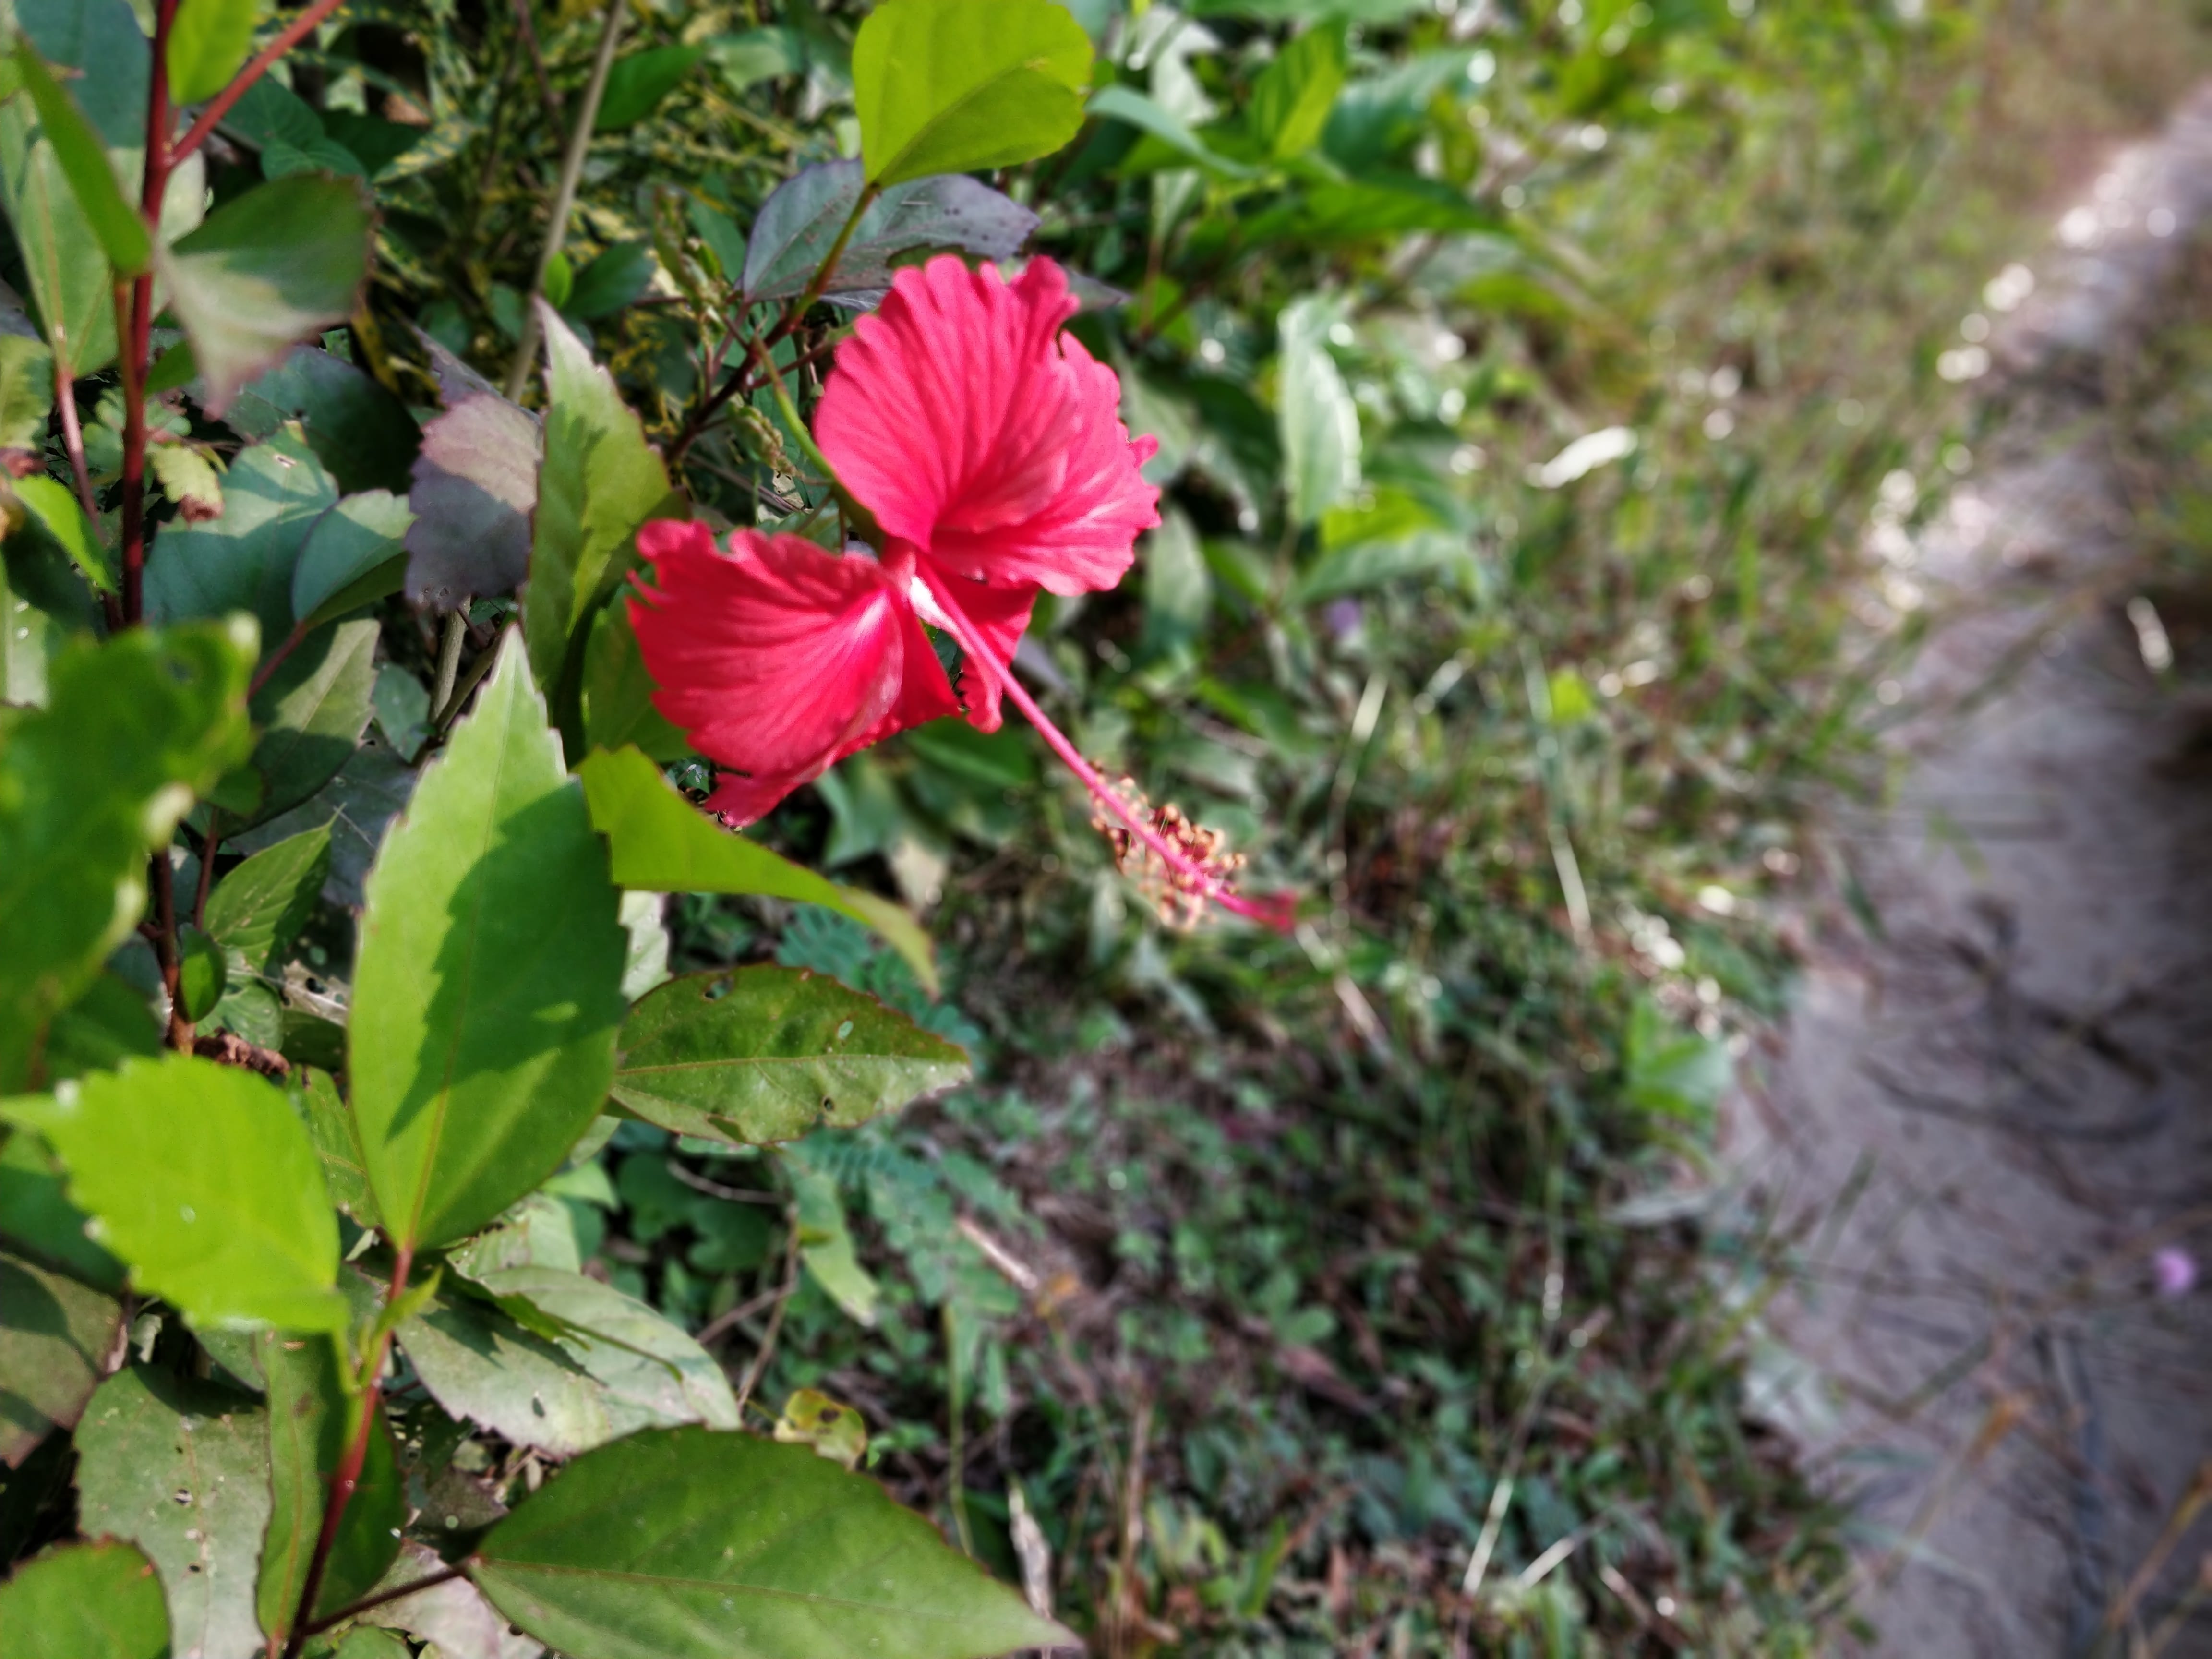 hibiscus flower